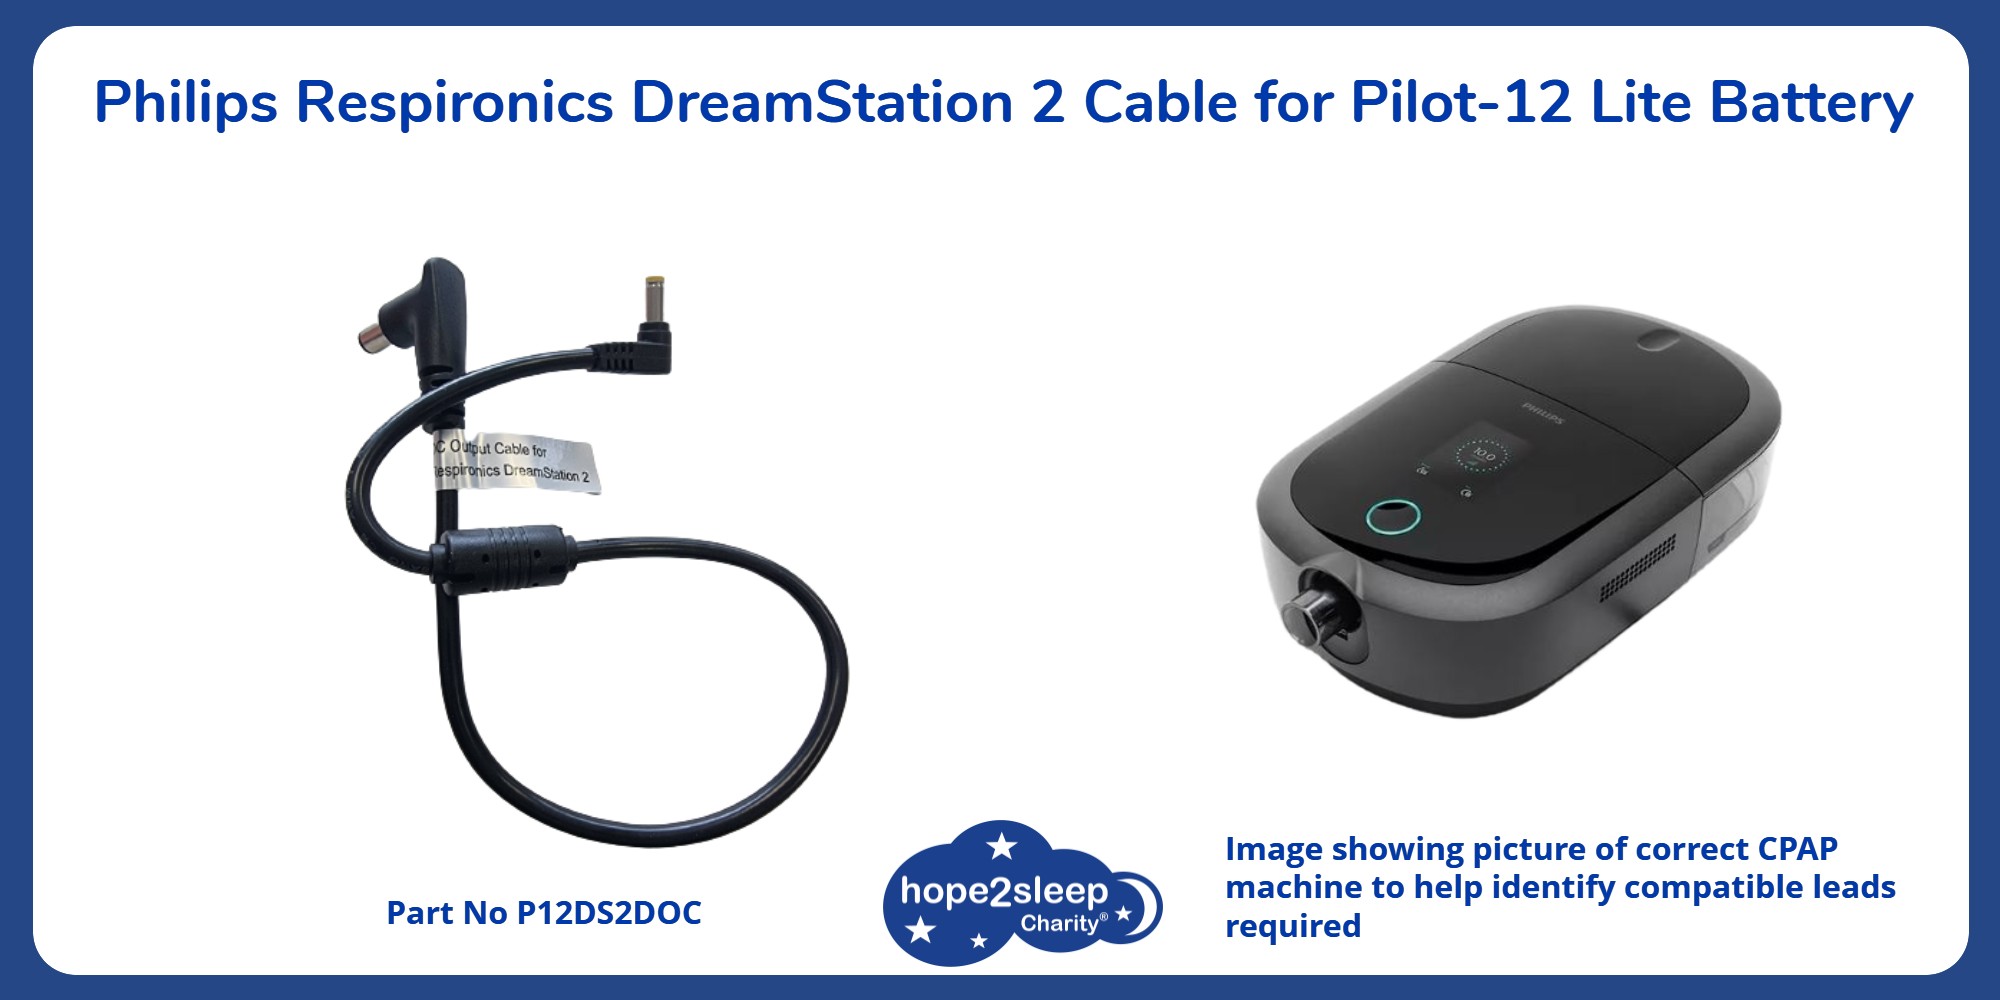 Pilot-12 DreamStation 2 Cable